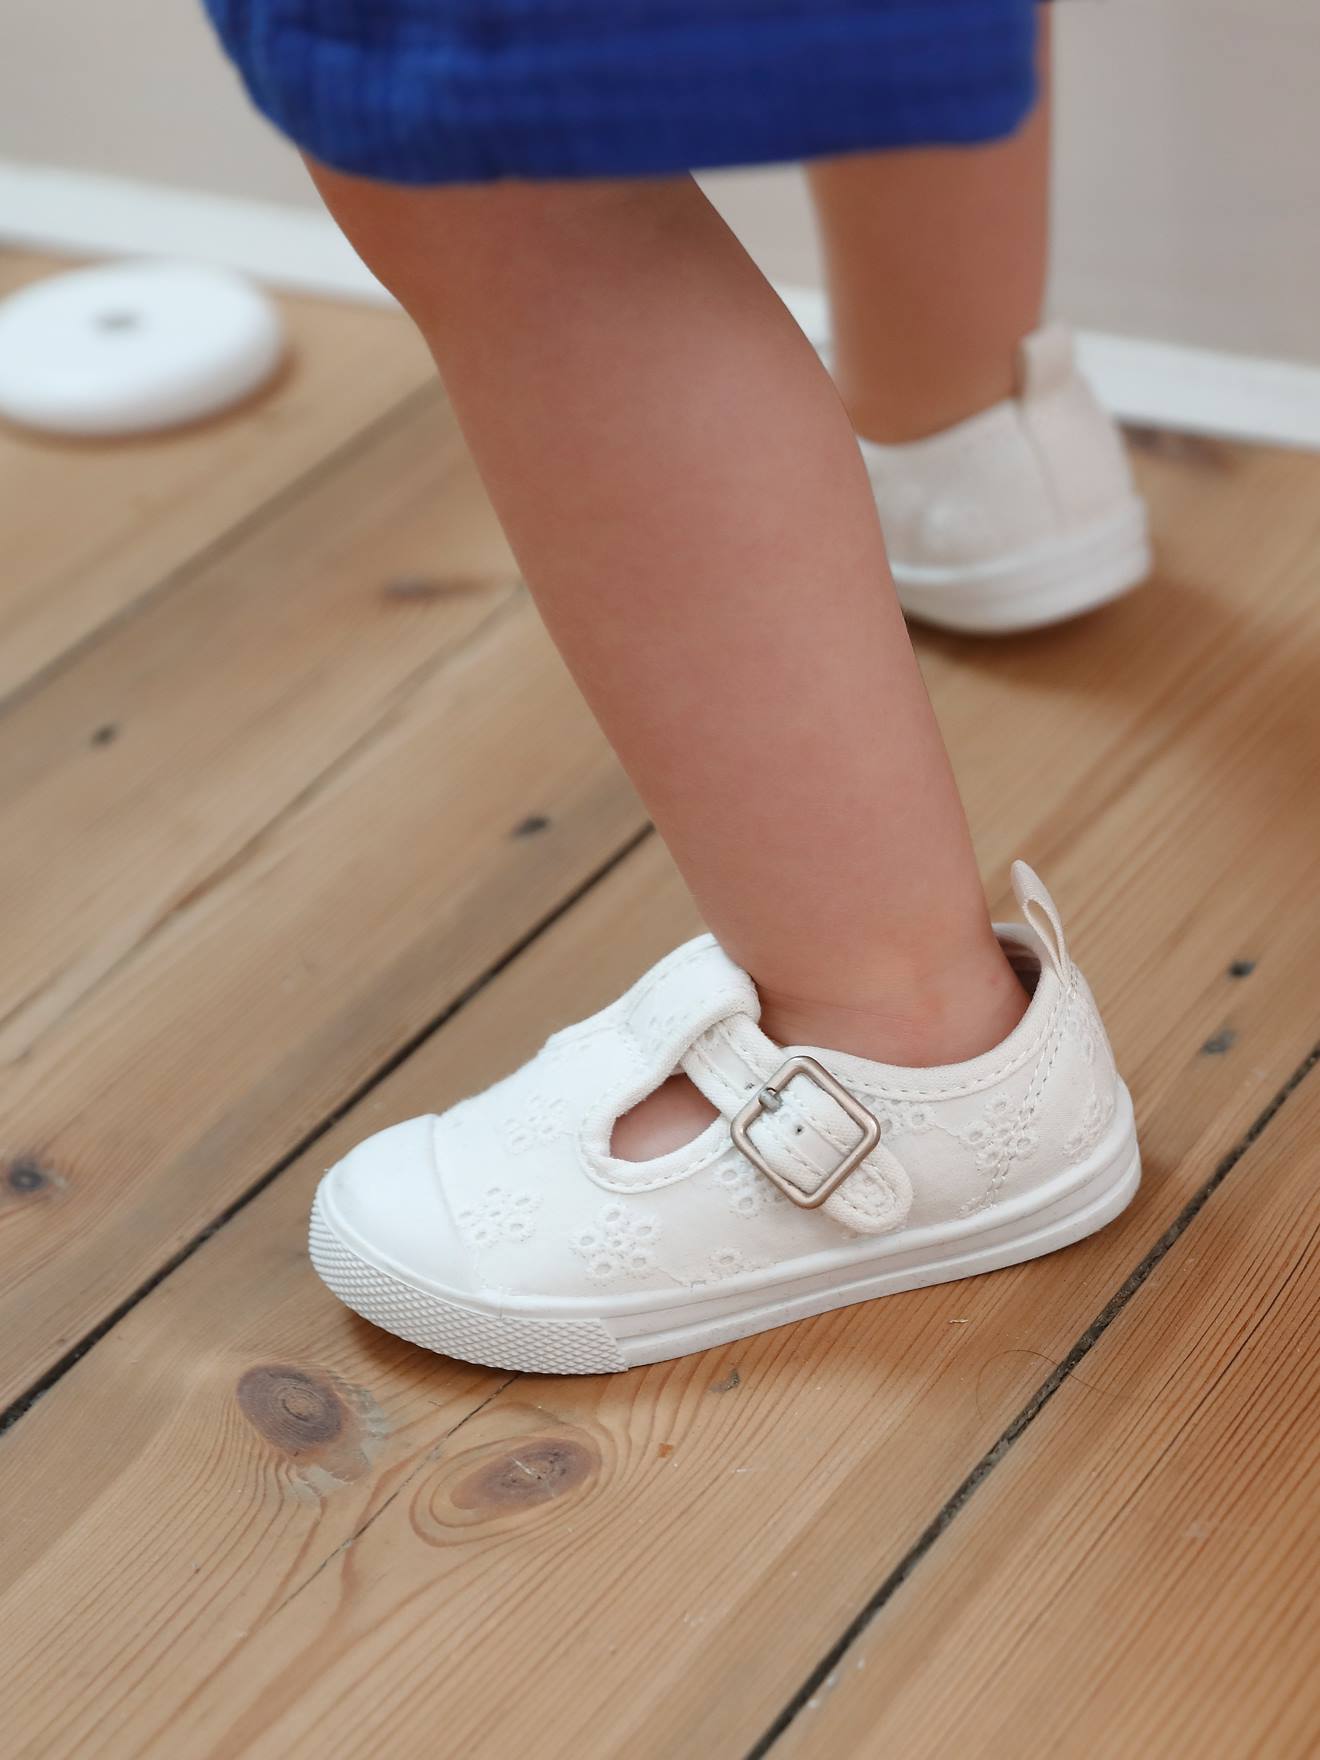 Stoffen schoentjes voor babymeisjes wit engels borduurwerk